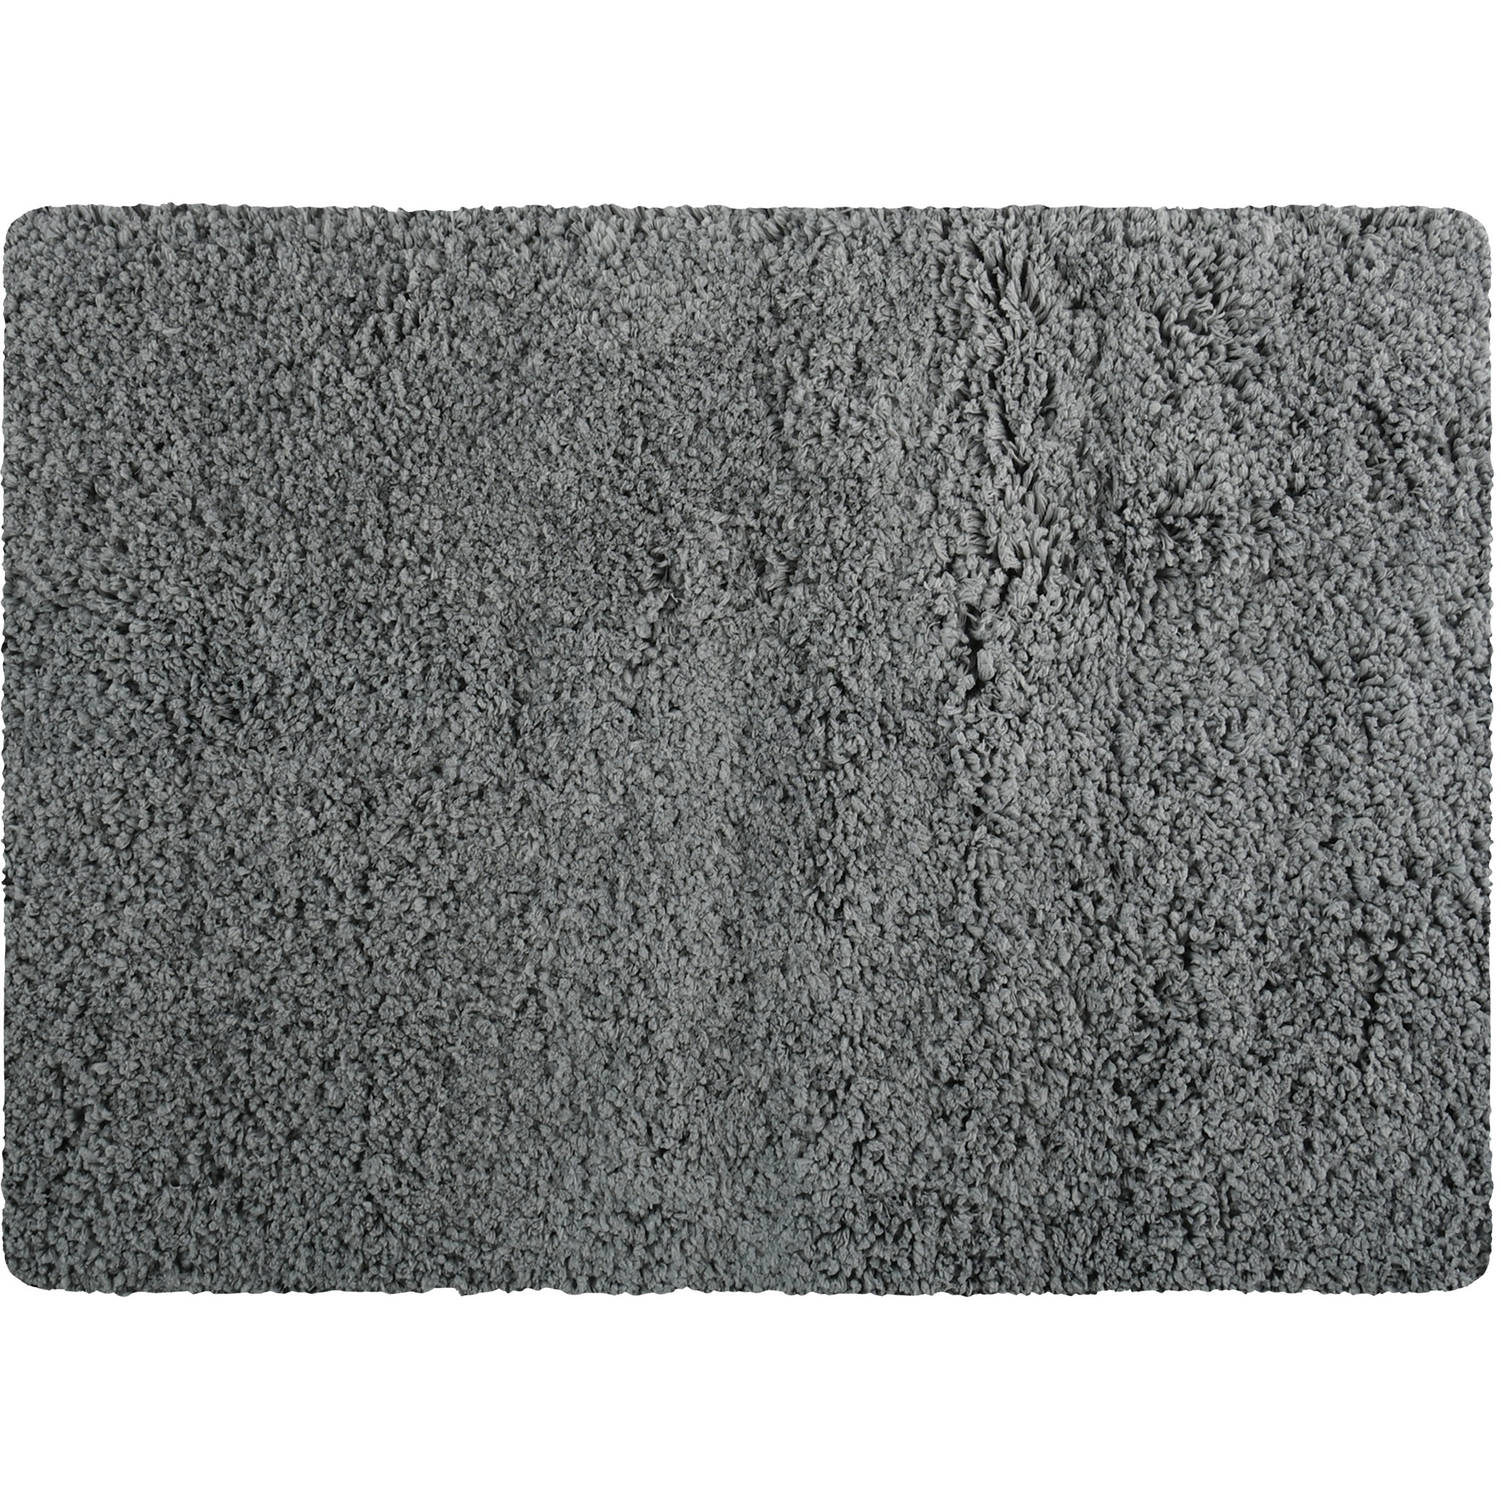 MSV Badkamerkleedje/badmat tapijt - voor de vloer - grijs - 50 x 70 cm - Microfibre - langharig